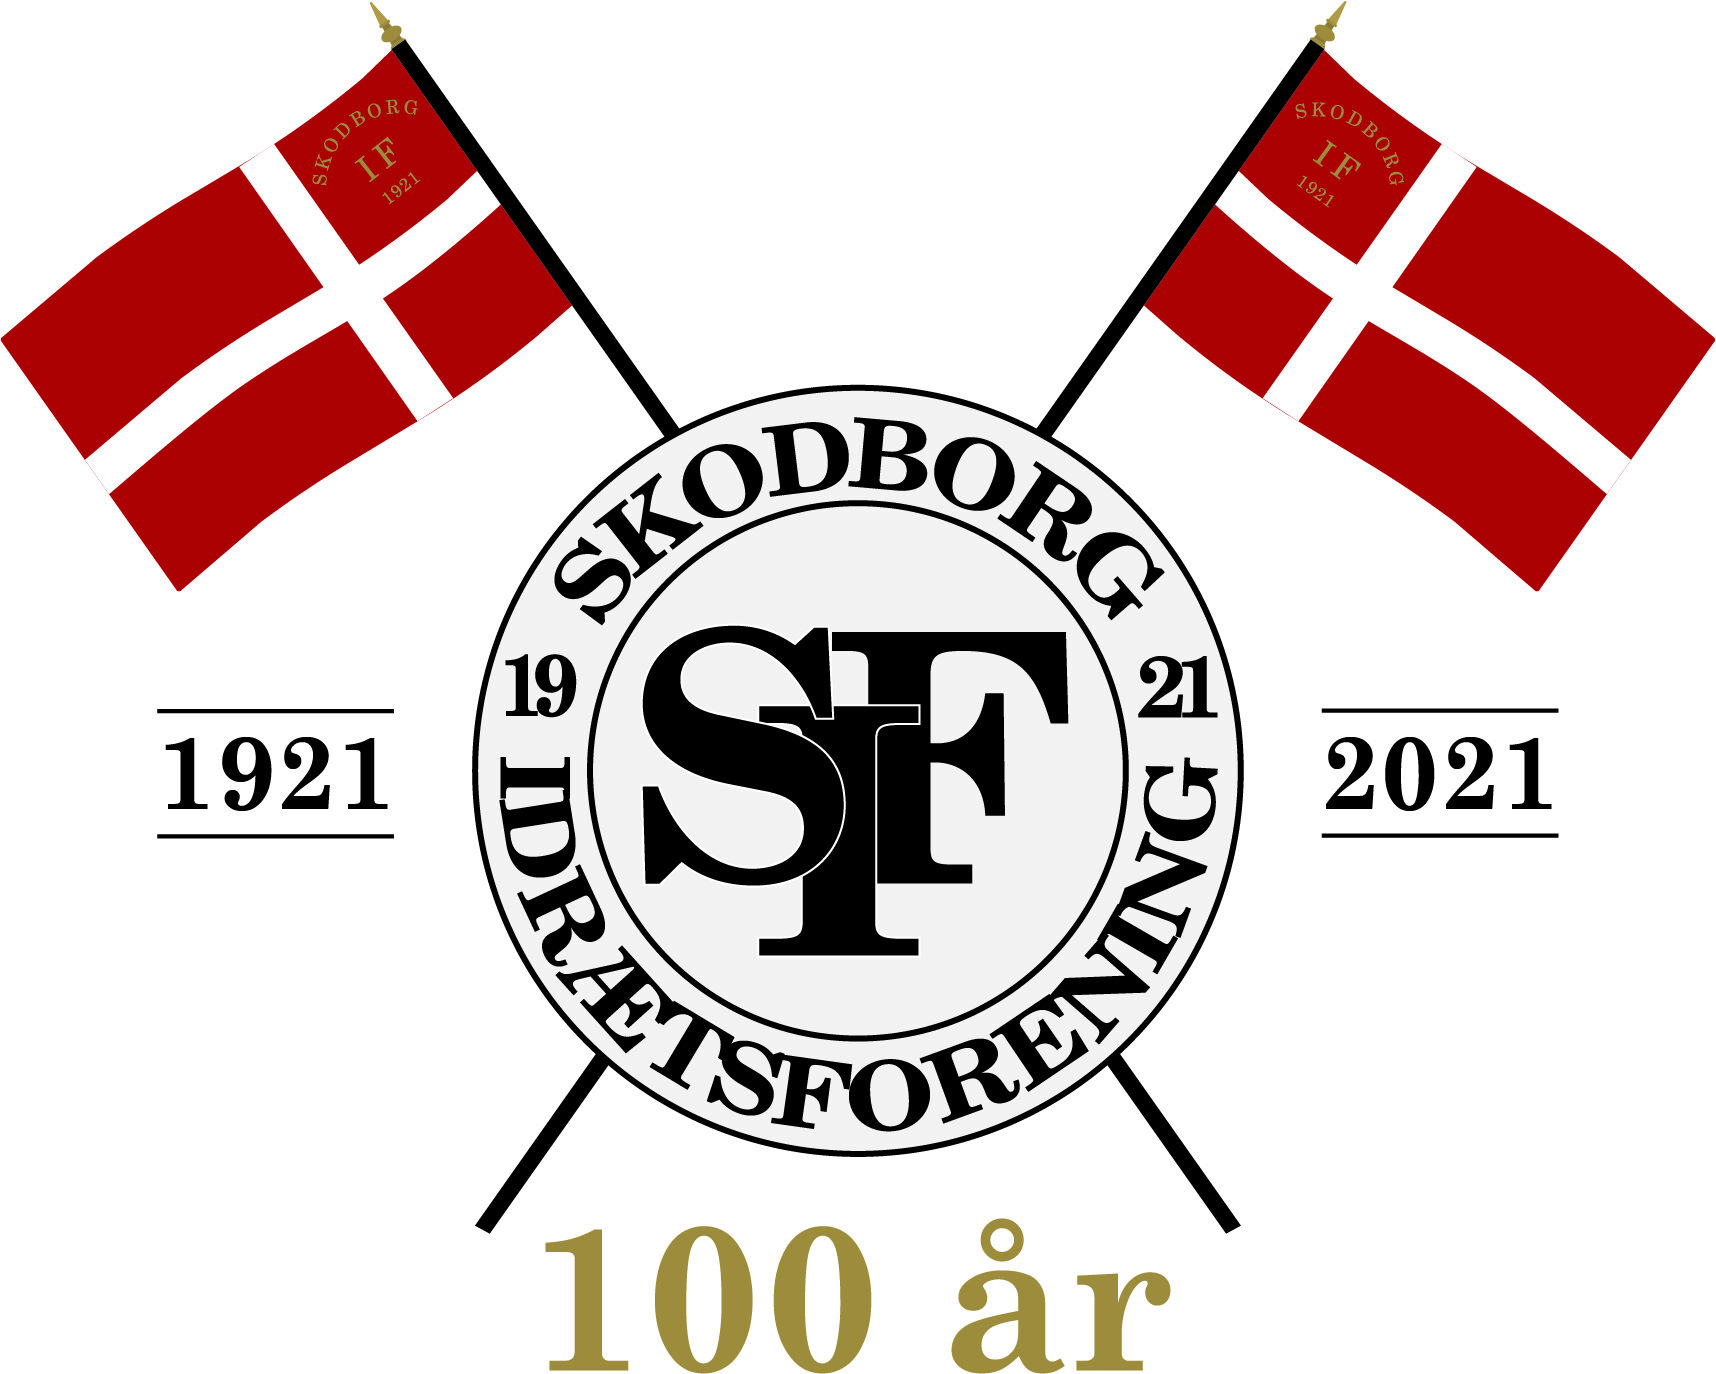 SIF – Skodborg Idrætsforening